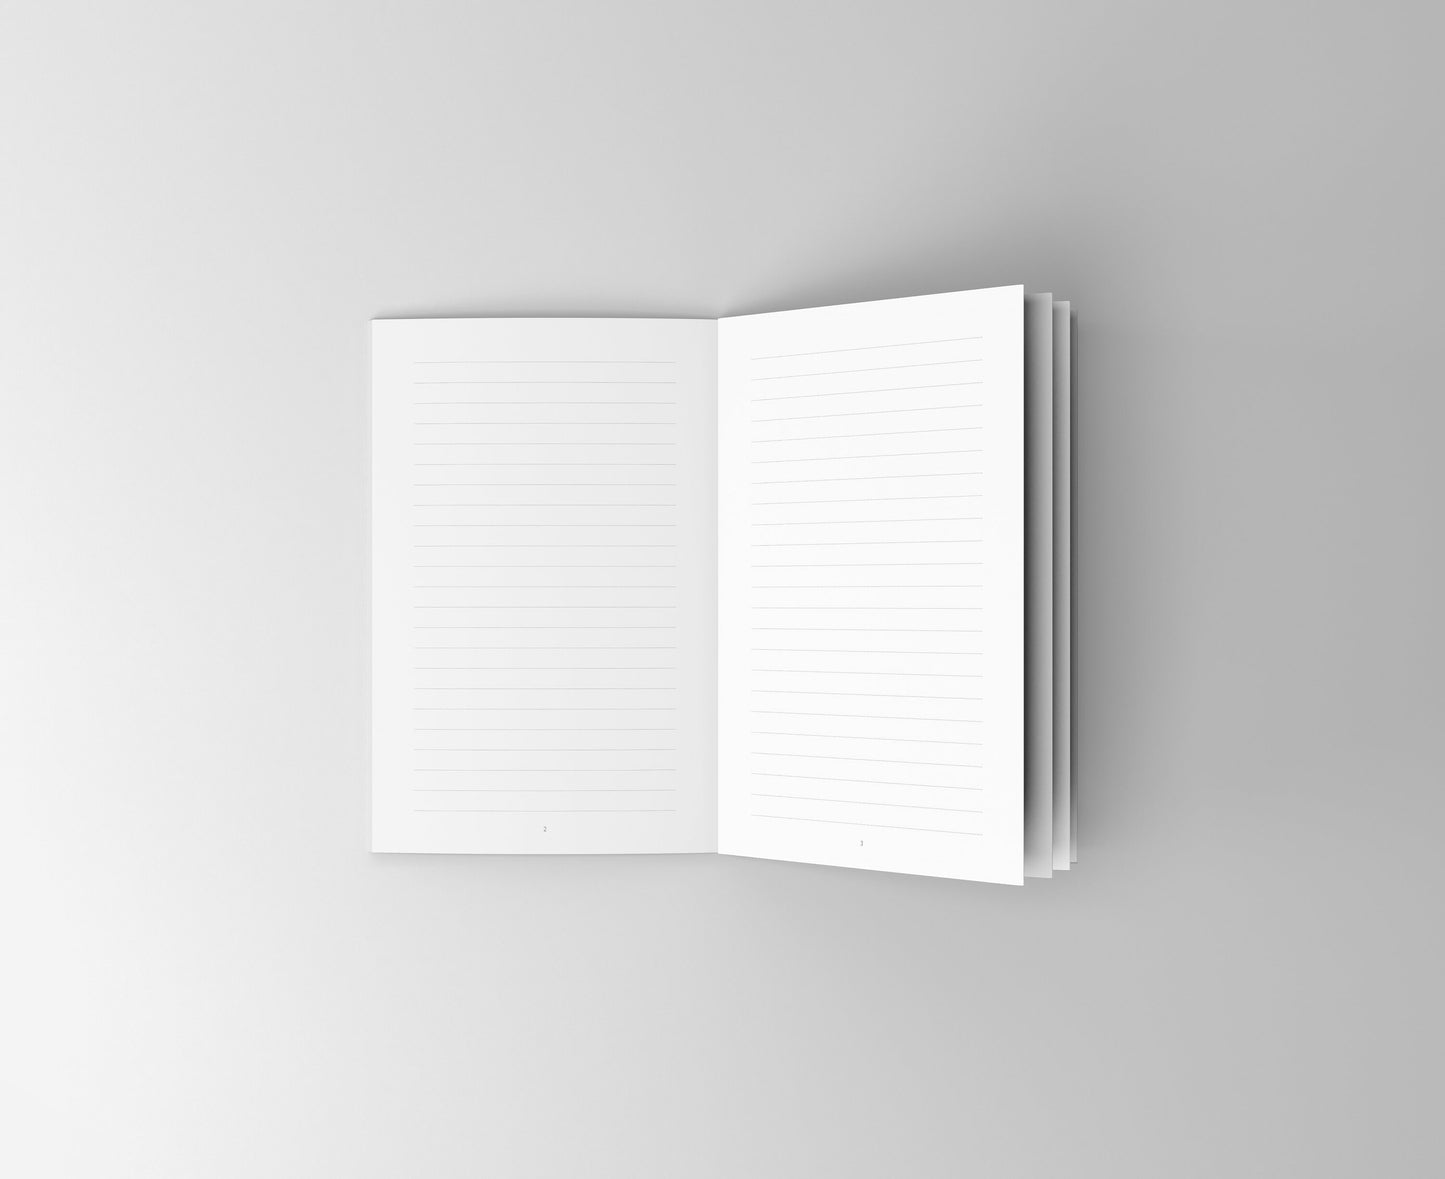 Notizbuch Papageien | Kakadus | 13x20 cm